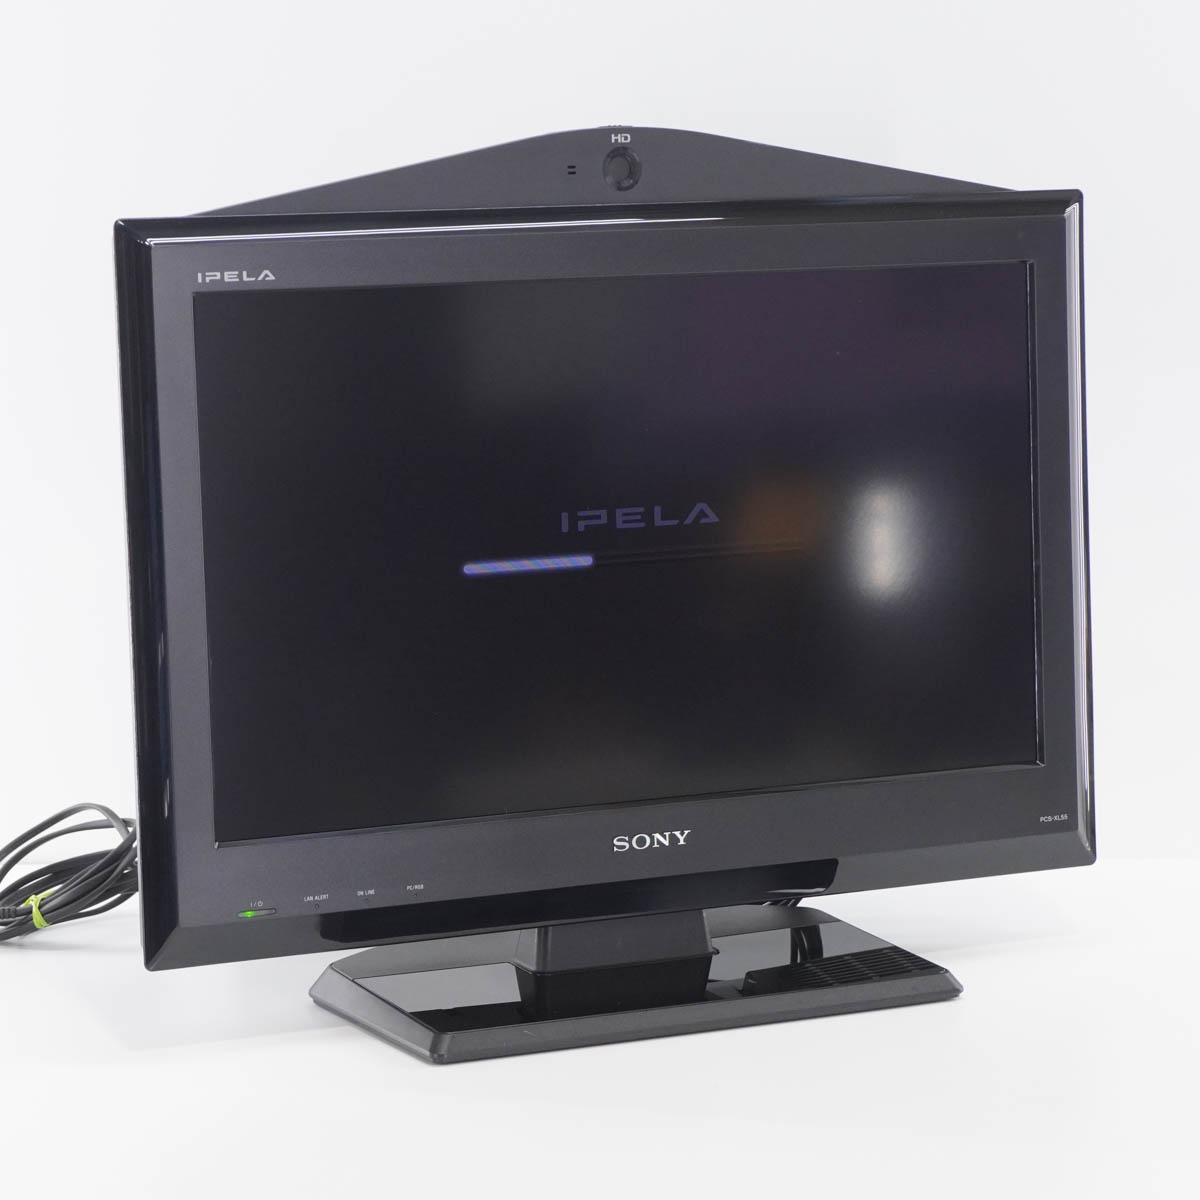 【中古】[PG]8日保証 SONY PCS-XL55 IPELA HDビデオ会議システム HD VISUAL COMMUNICATION SYSTEM 21.6型 21.6インチ 1366×768 A...[ST03403-0004]